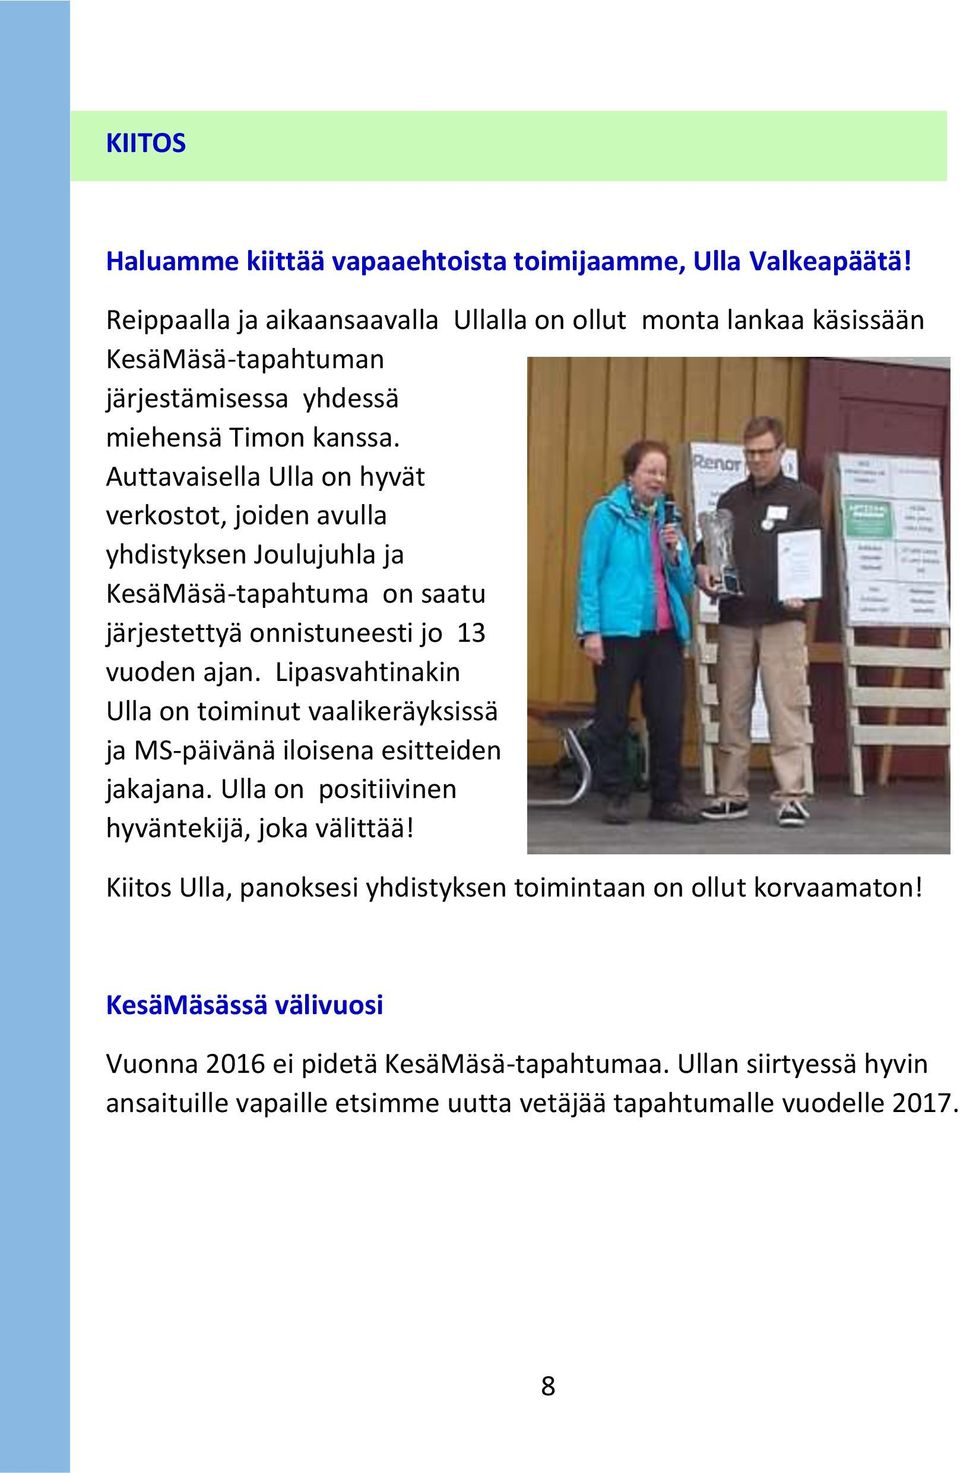 Auttavaisella Ulla on hyvät verkostot, joiden avulla yhdistyksen Joulujuhla ja KesäMäsä-tapahtuma on saatu järjestettyä onnistuneesti jo 13 vuoden ajan.